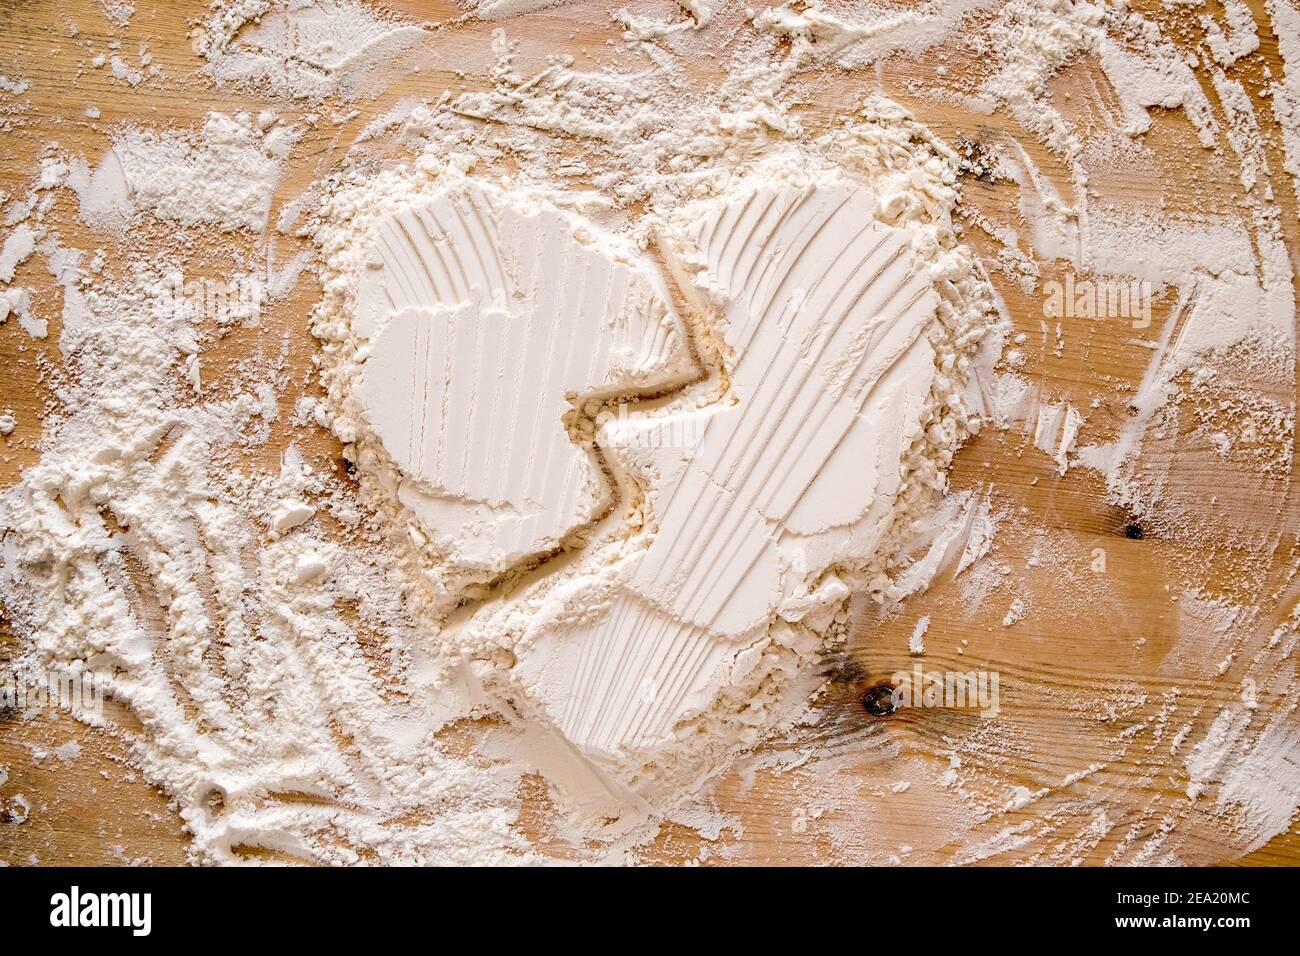 San Valentino. Il cuore rotto è un simbolo di amore fatto con la farina su una tessitura di legno. Spazio di copia. Concettuale. Foto Stock